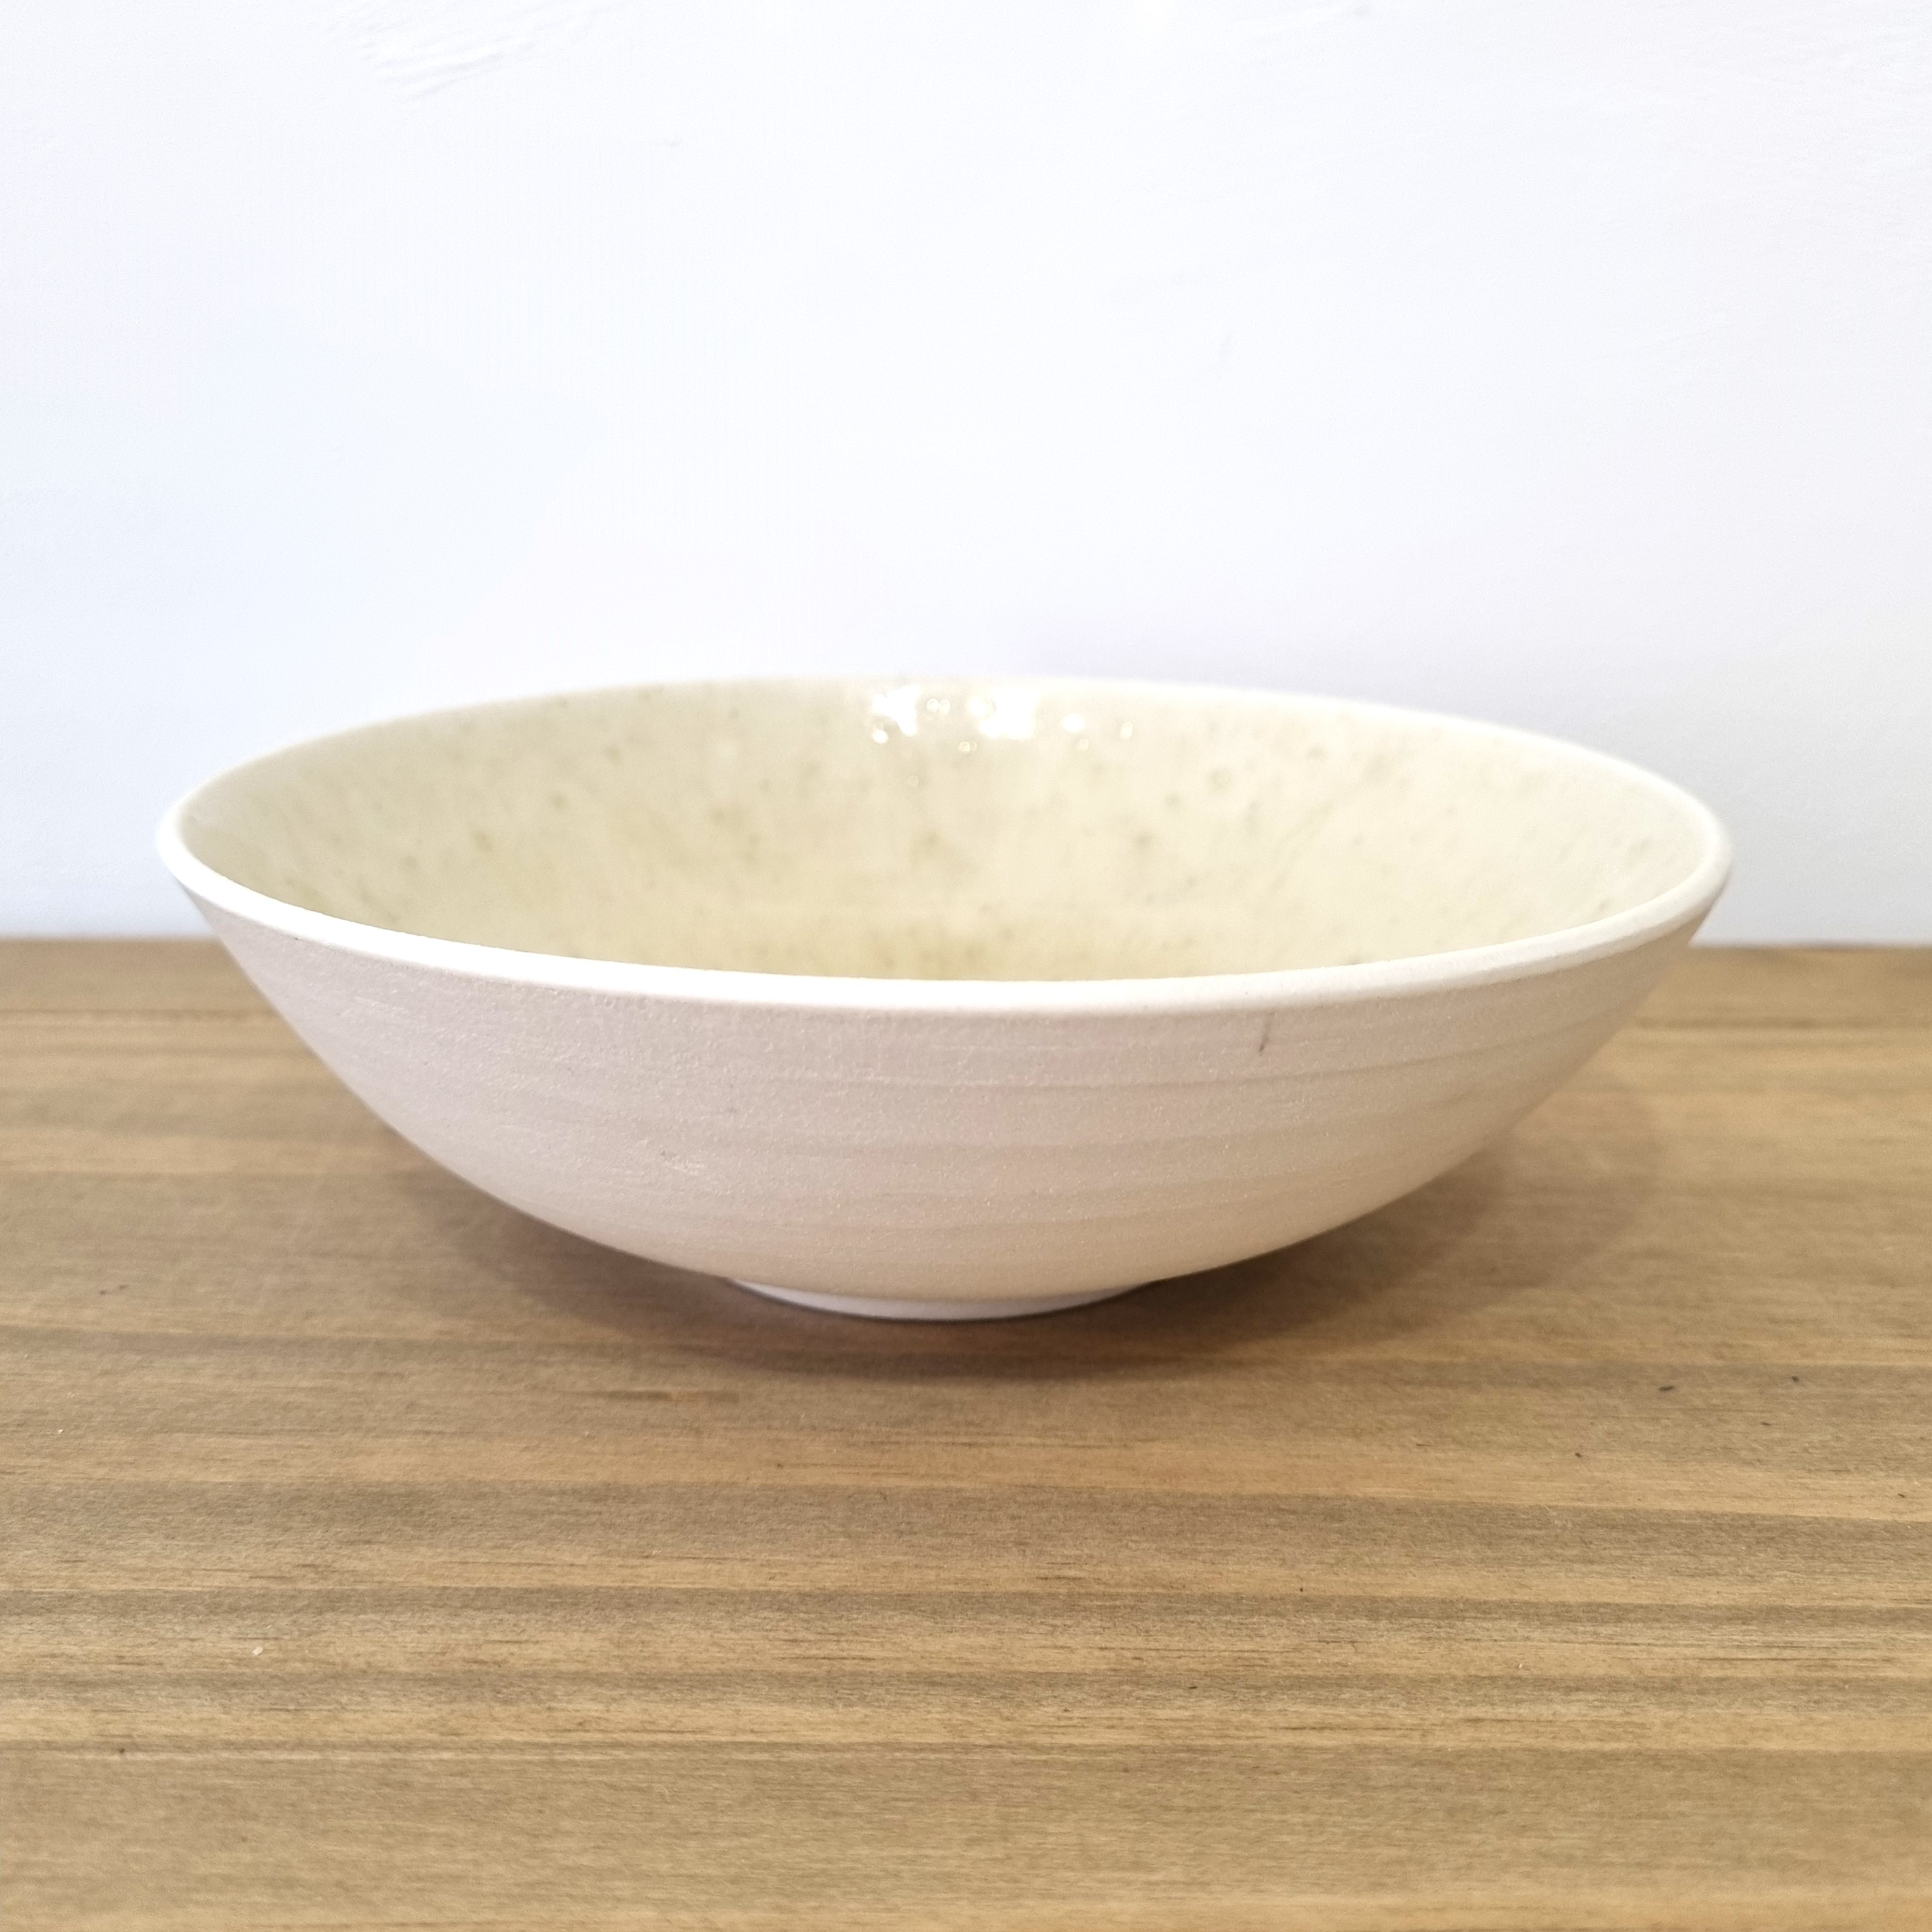 'Olive Wood Ash Glaze Bowl' by artist Robert Hunter